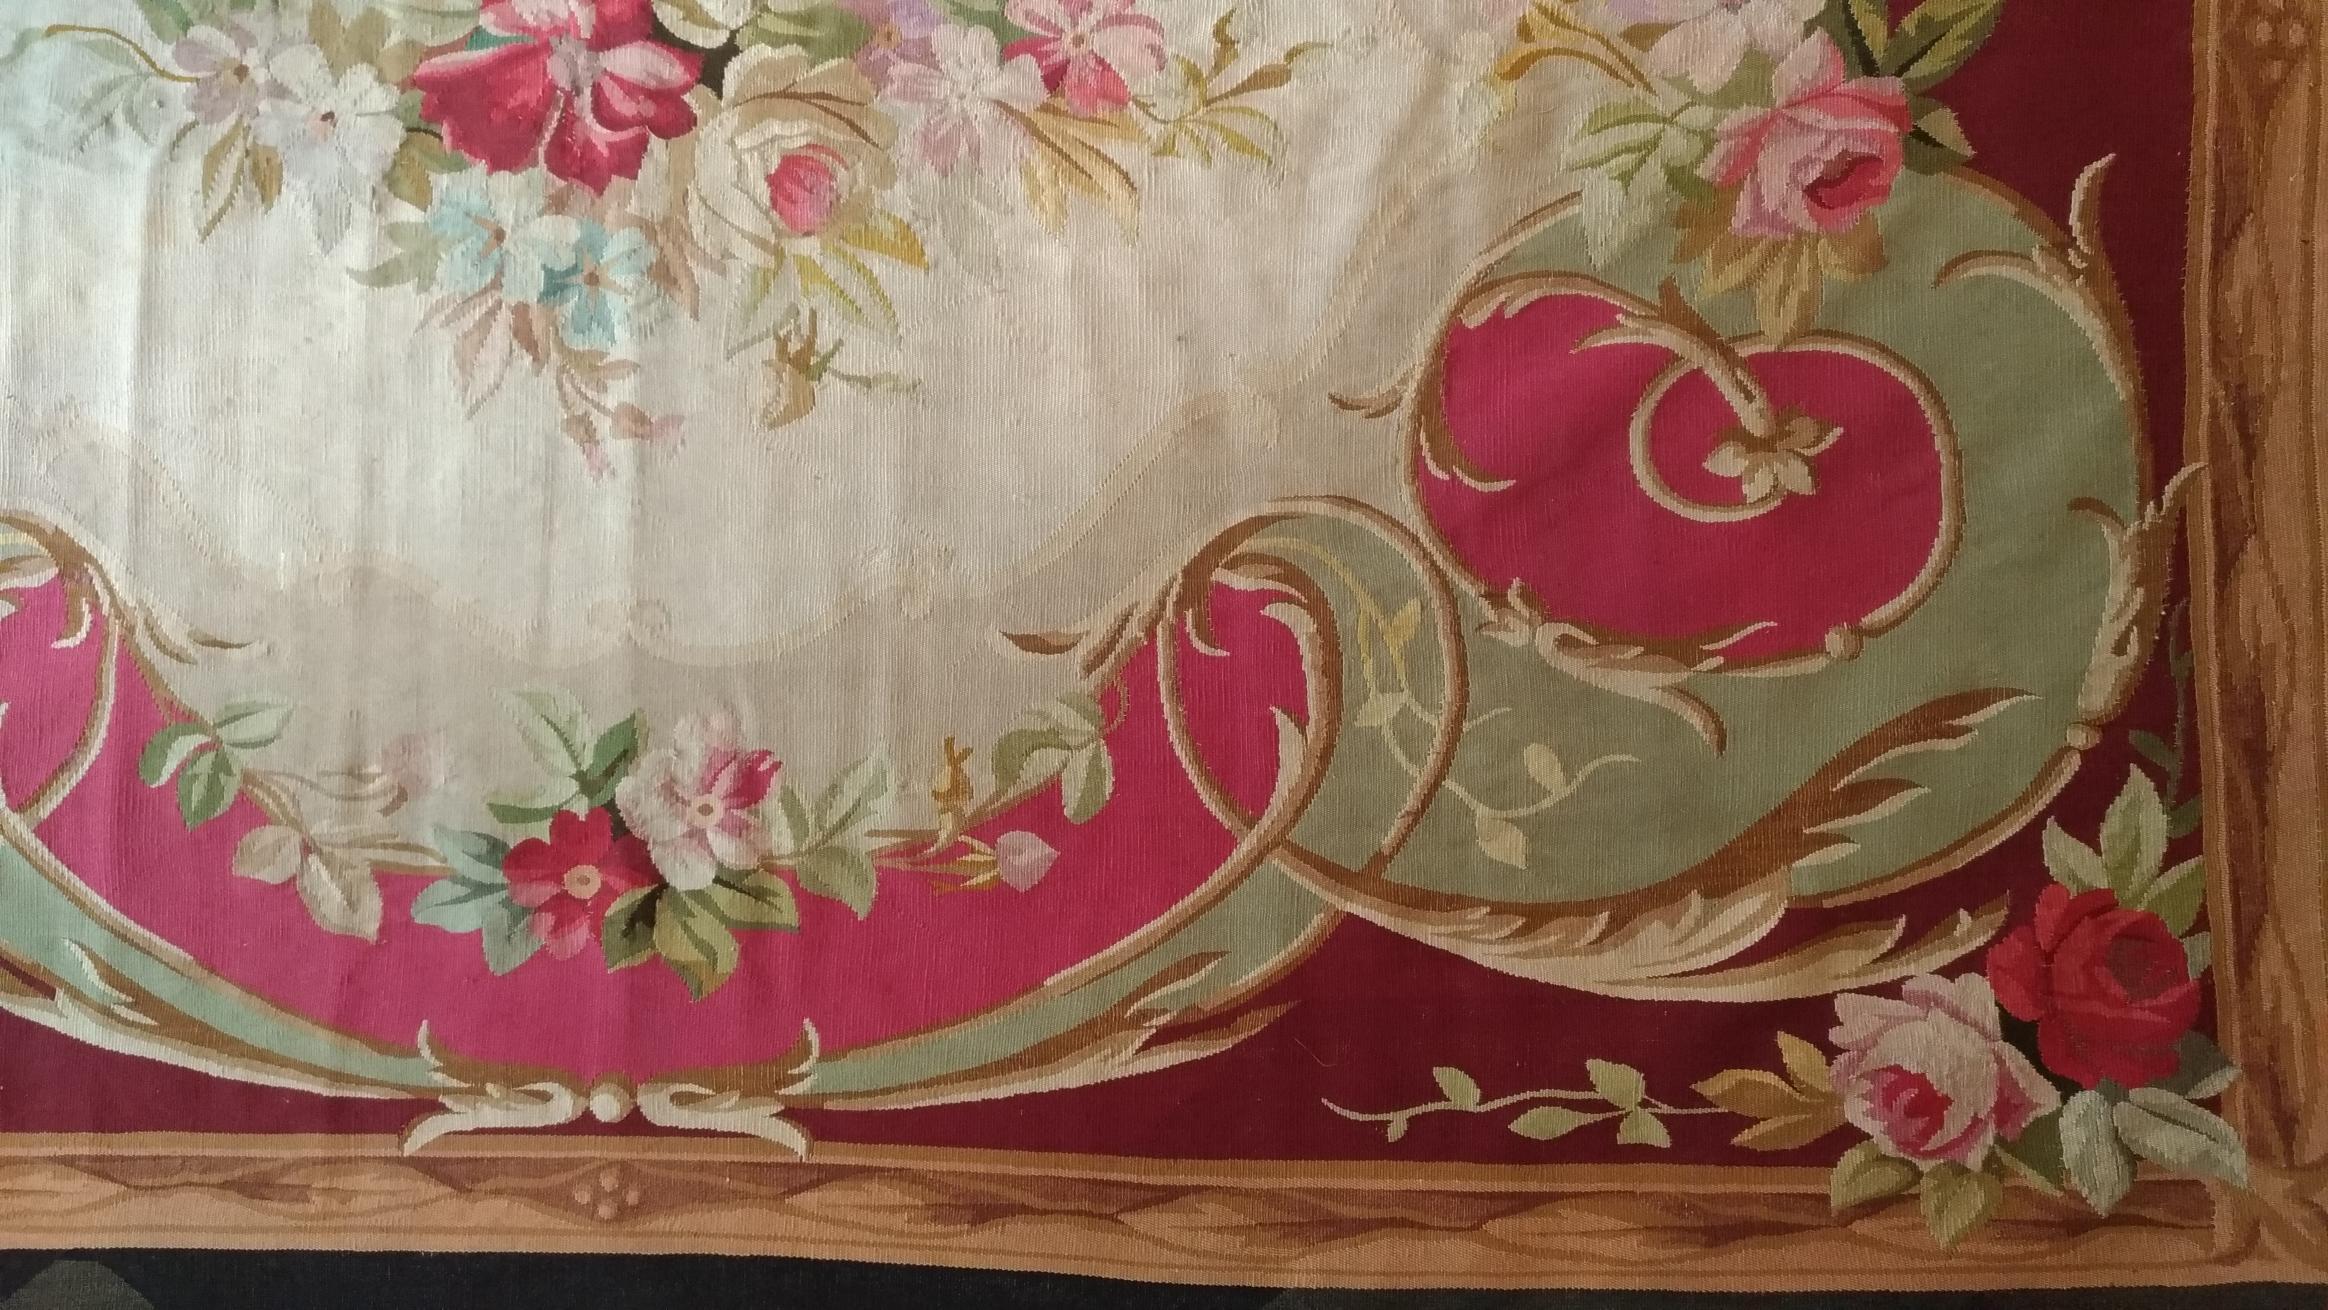 Aubusson-Teppich aus XIX Jahrhundert napoleon 3 mit frischen Farben.
Dank unserer Restaurierungs- und Konservierungswerkstatt und unserem Know-how, 
freuen wir uns, Ihnen Kunstwerke aus Stoff wie Gobelins präsentieren zu können, 
Teppiche und